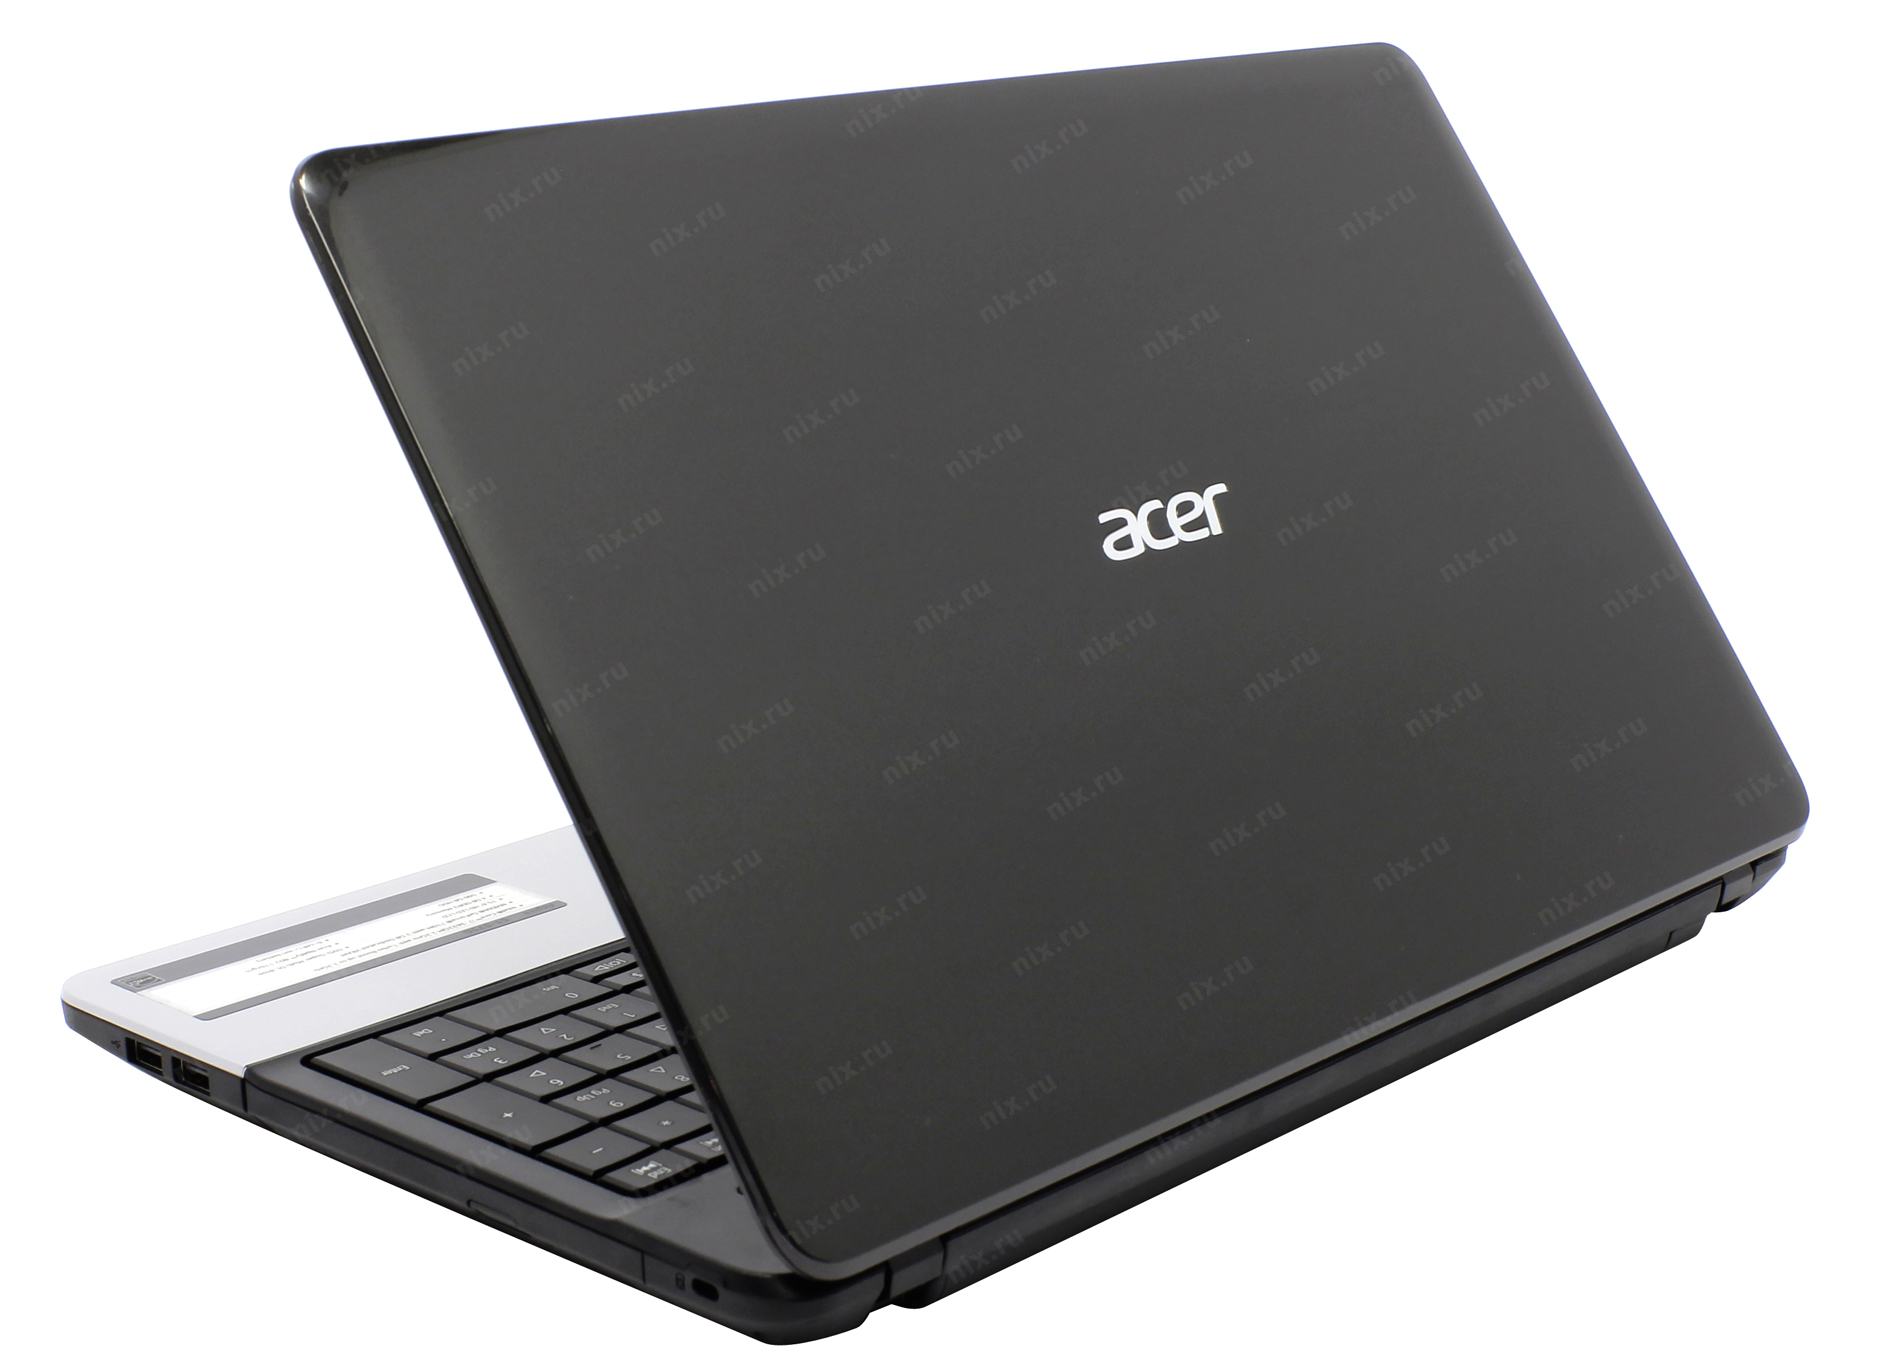 Ноутбук aspire e1 571g. Ноутбук Acer Aspire e1-571g-73634g50mn. Acer Aspire e1-571g-33114g50mnks. Ноутбук Acer Aspire 5553g-n934g50mnks. Acer e1 571g 73634g50mnks купить на авито.